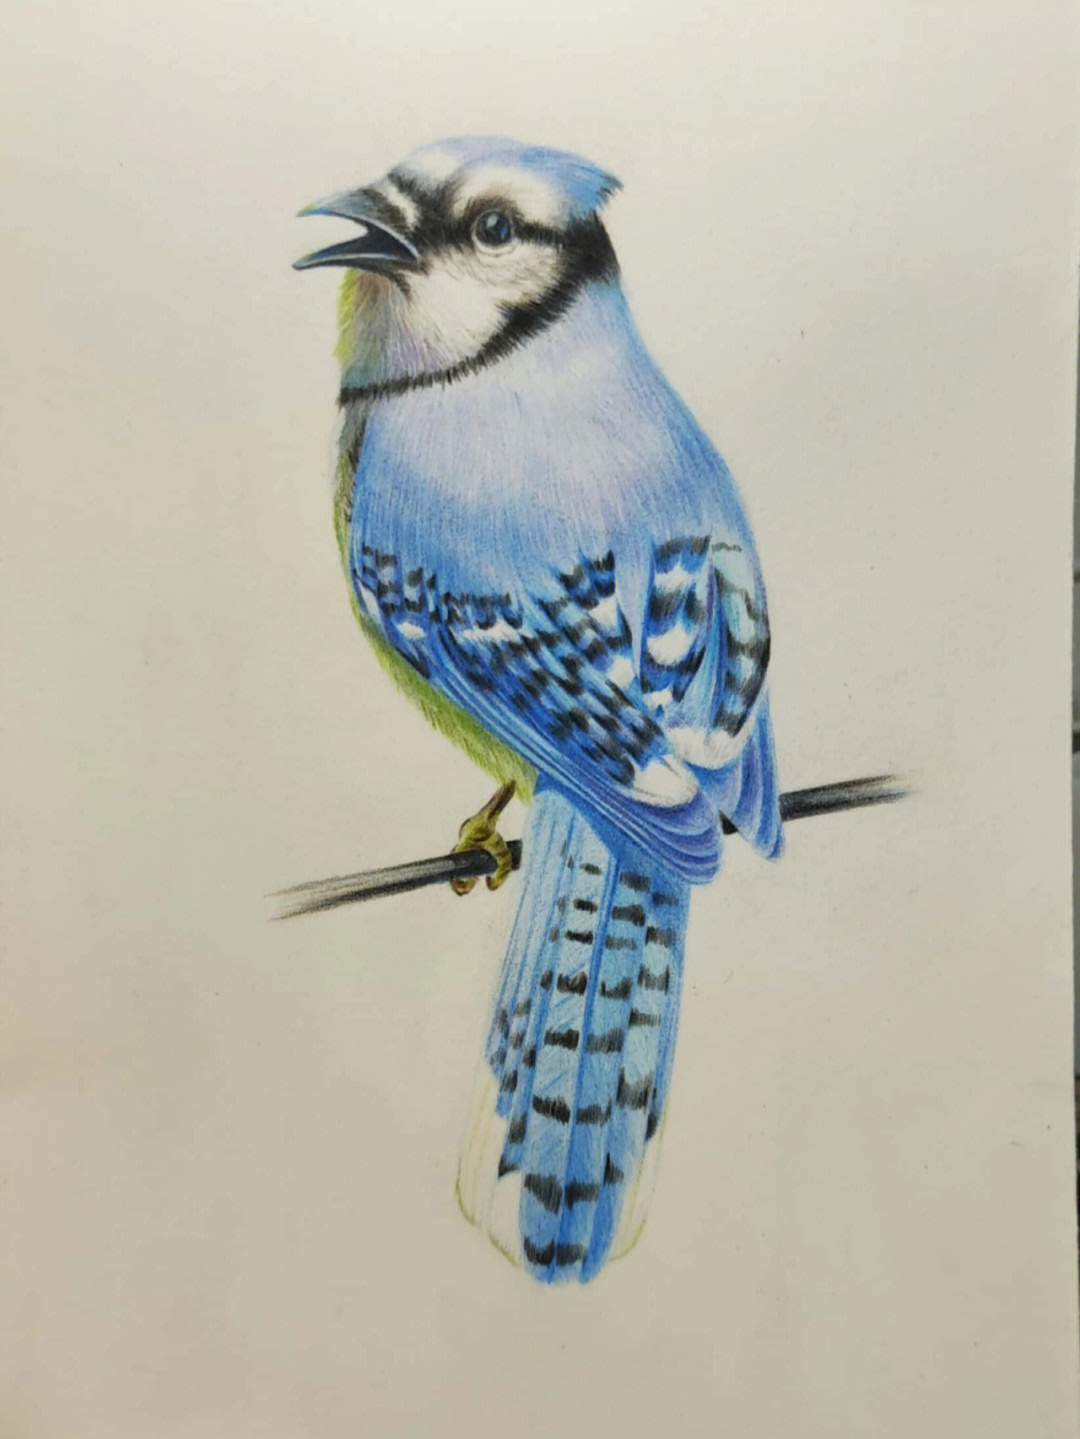 彩铅画可爱小鸟图片